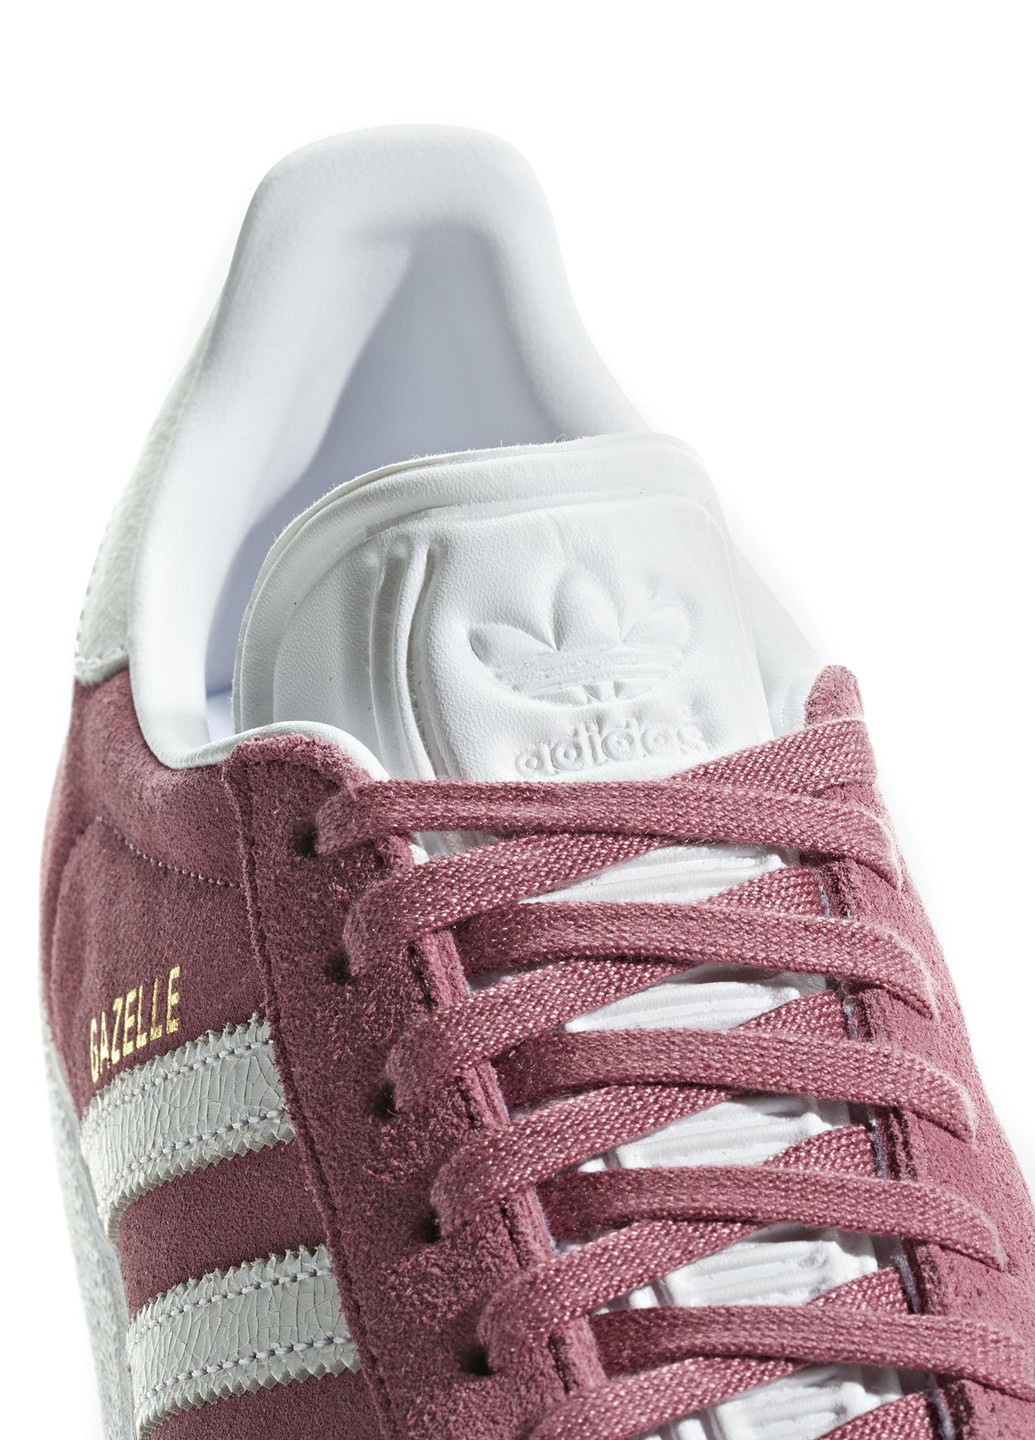 Розовые демисезонные кроссовки adidas Gazelle